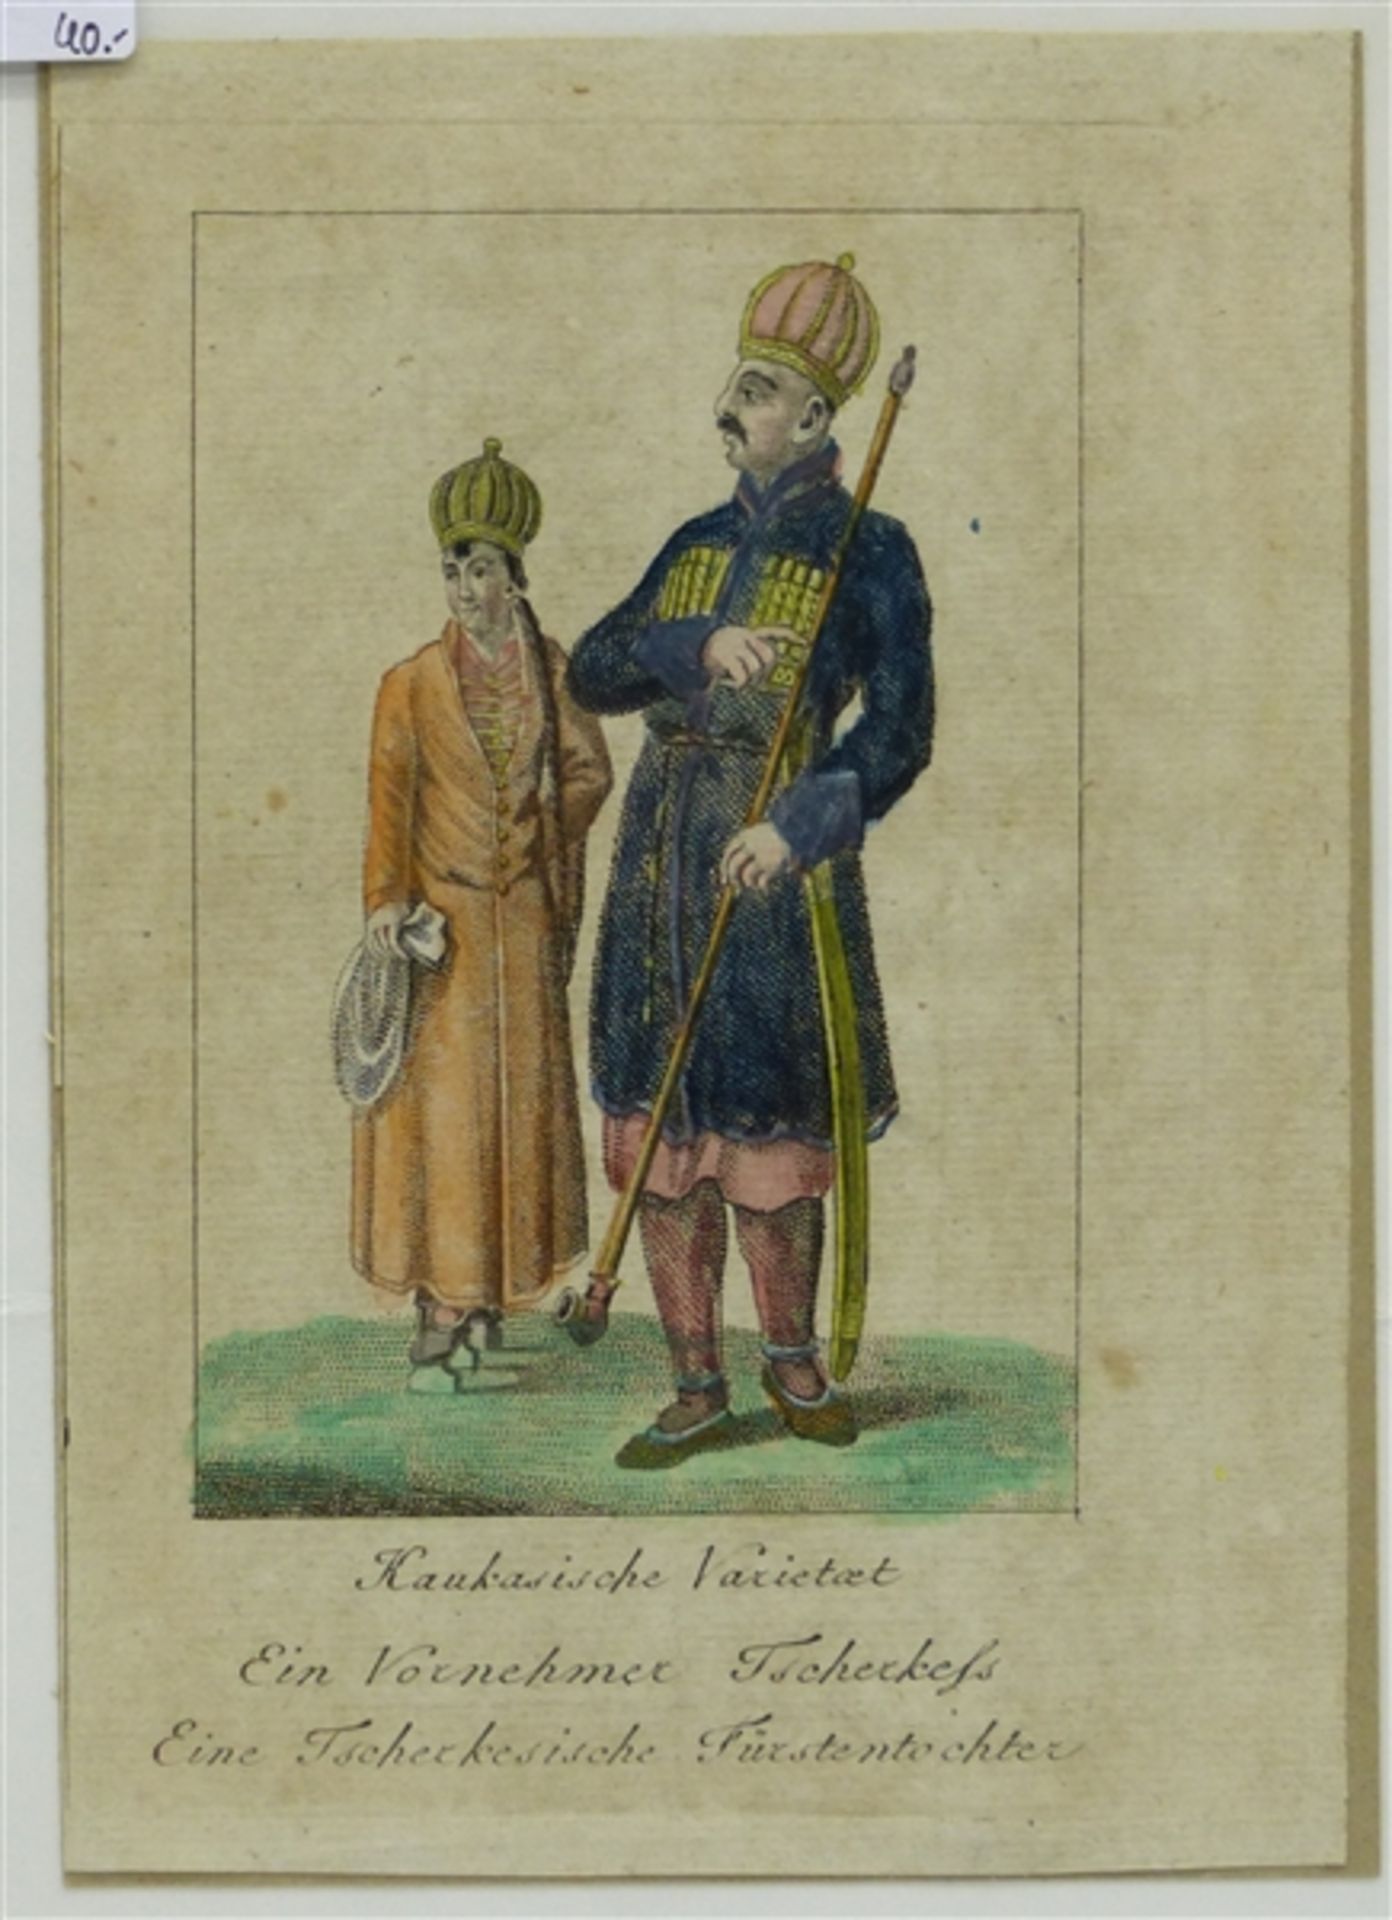 Kupferstich coloriert, "Eine Tscherkesische Fürstentochter", 18x13 cm,